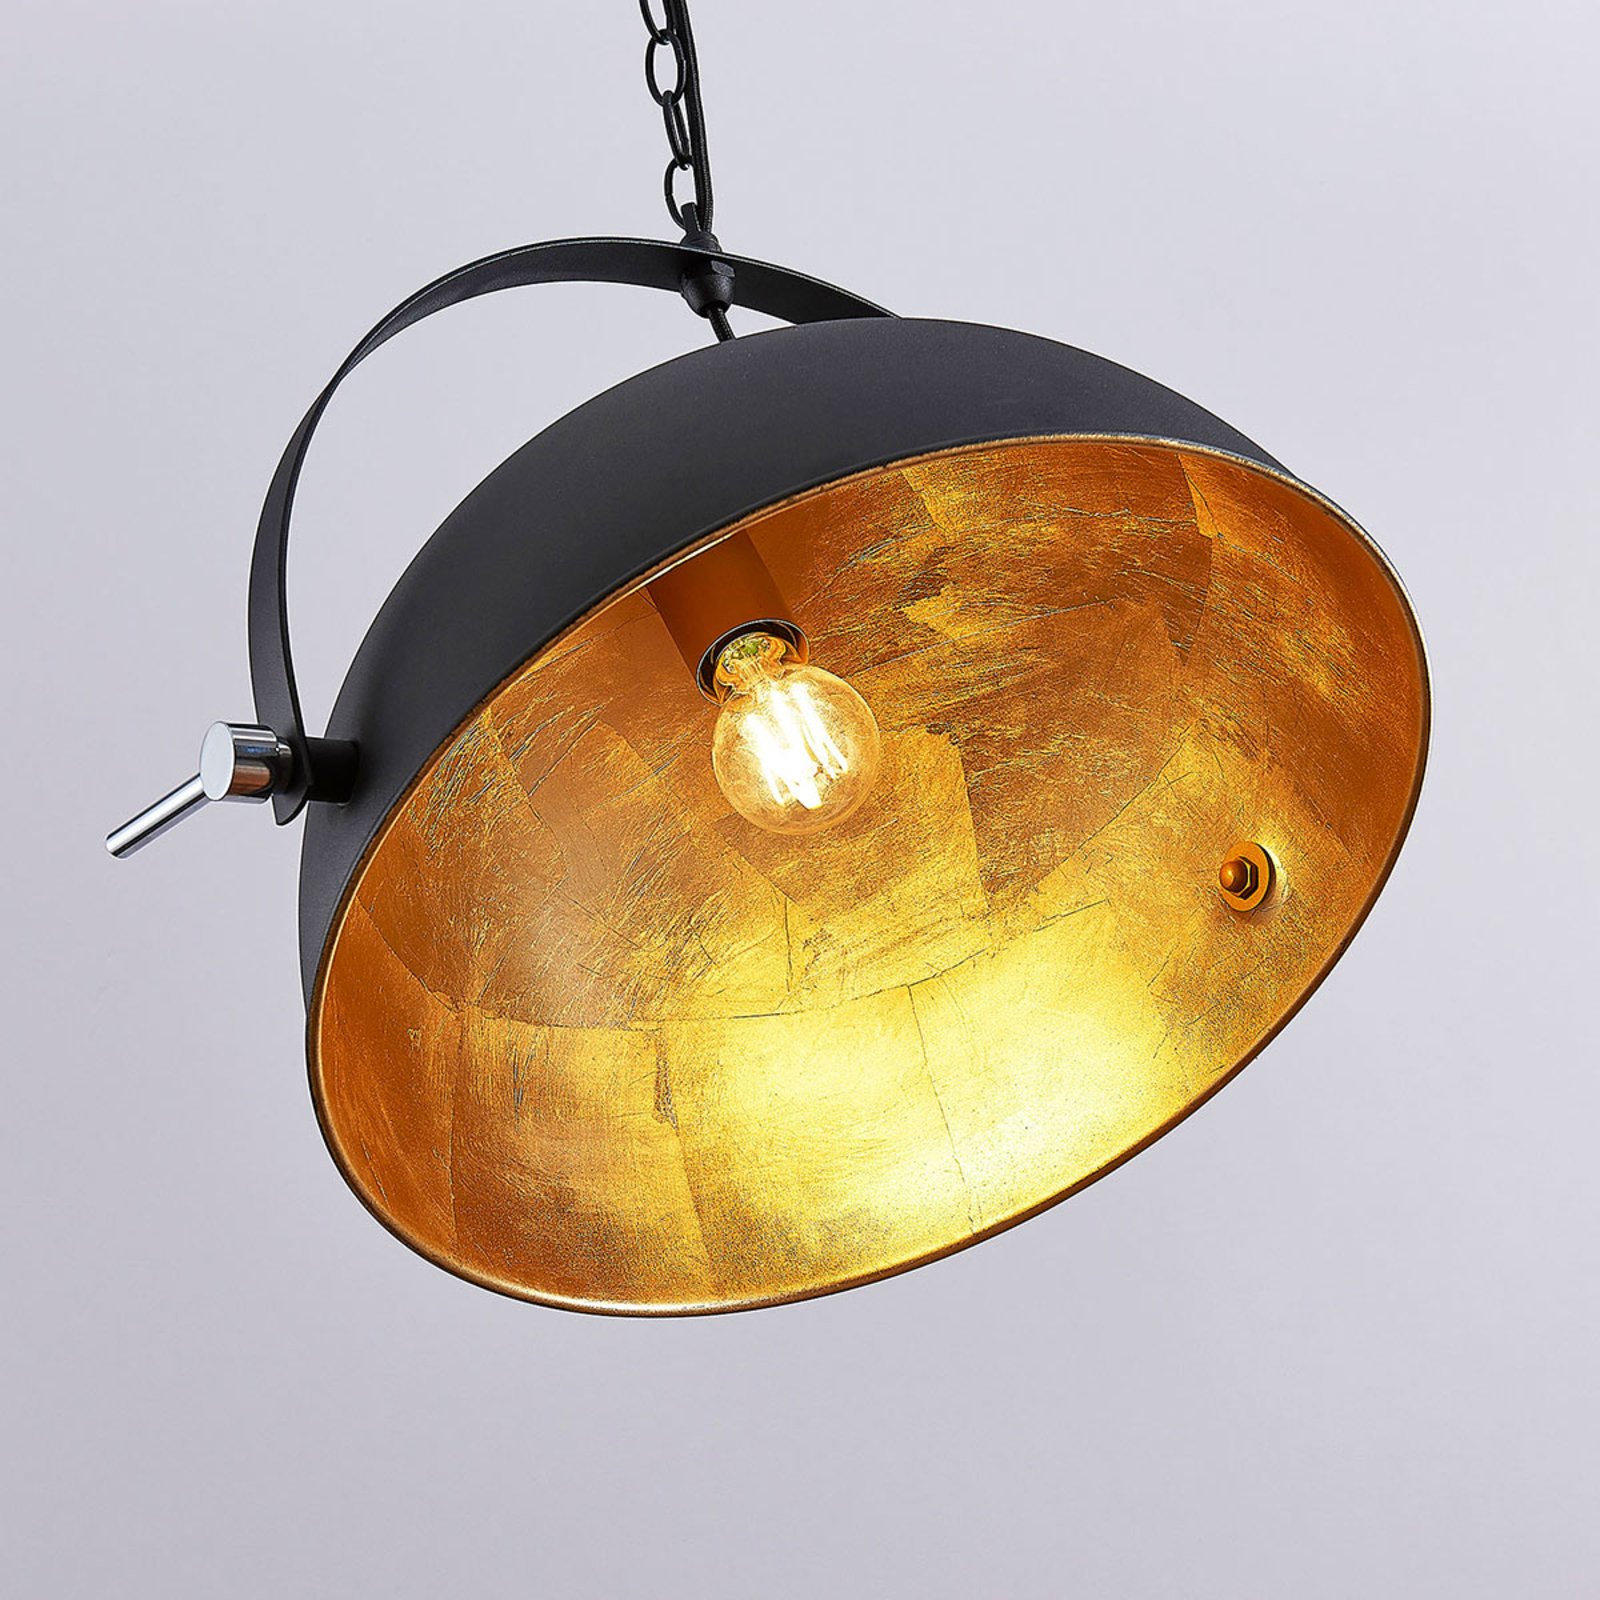 Hanglamp Muriel, zwart/goud